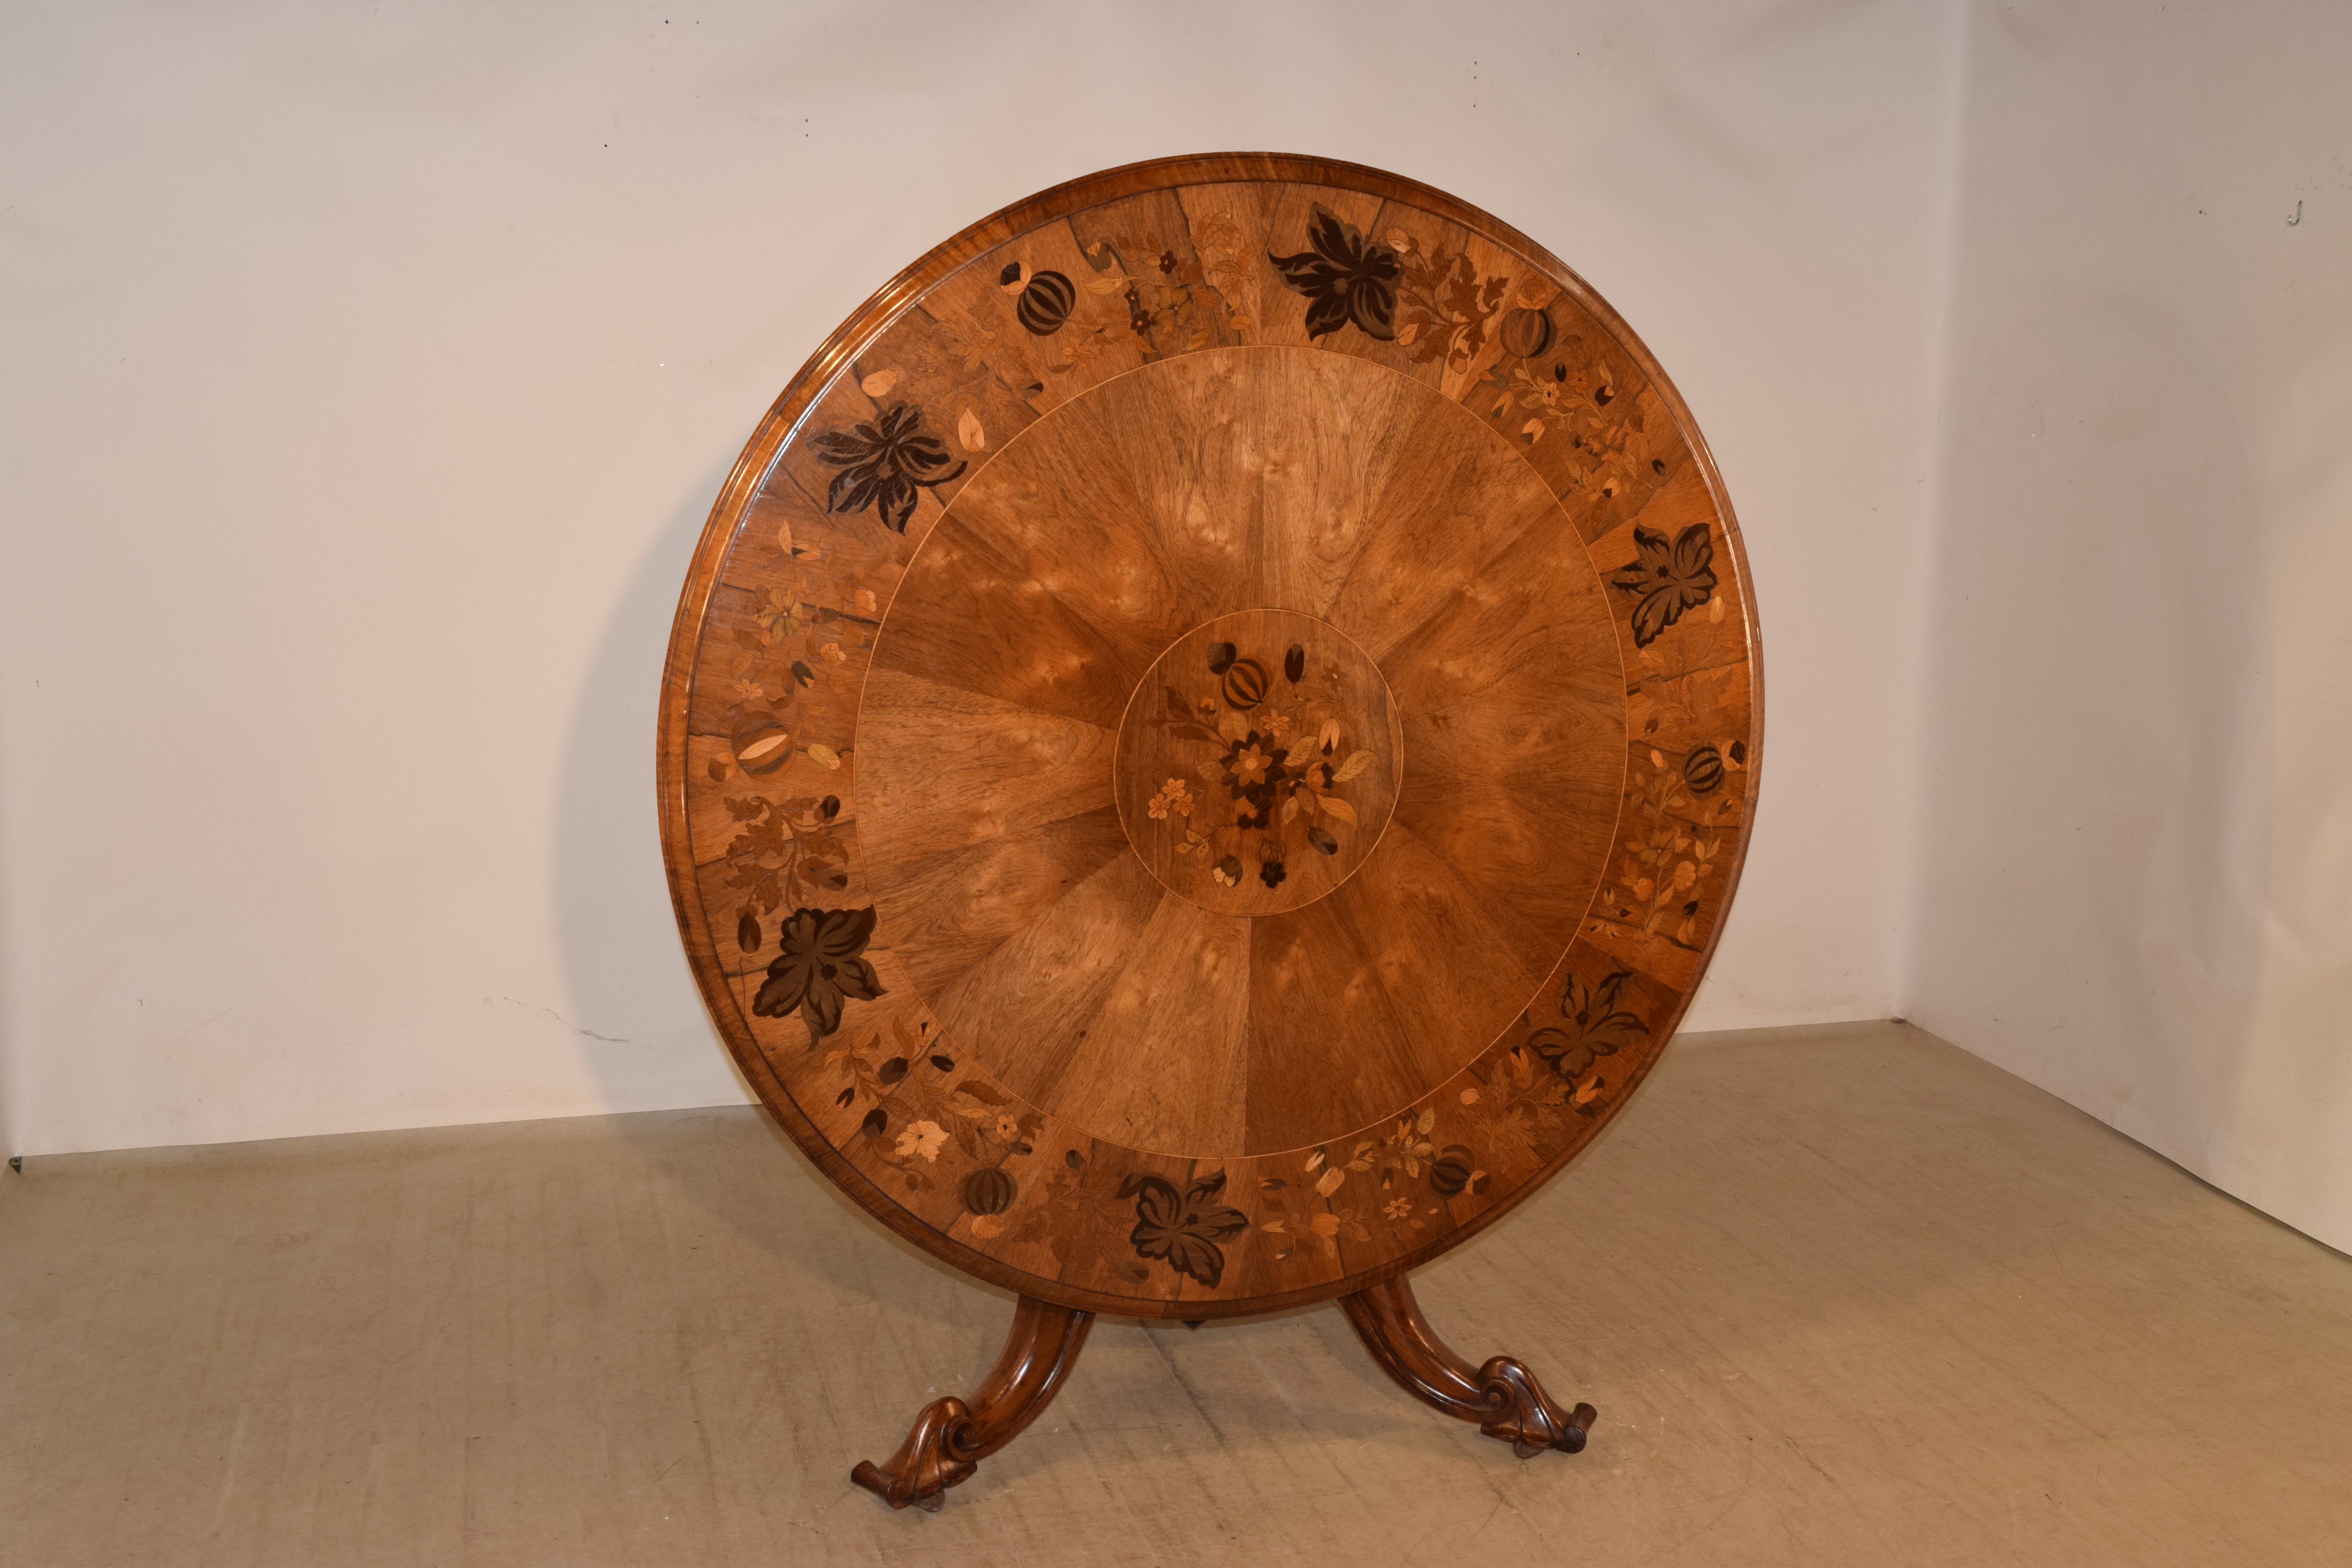 kippbarer Tisch aus England aus dem 19. Jahrhundert aus Mahagoni und Palisanderholz. Die Platte hat einen abgeschrägten Rand um ein Band aus Palisanderholz mit eingelegten Mustern von Blumen, Ranken und Früchten. Die Intarsienarbeit ist absolut